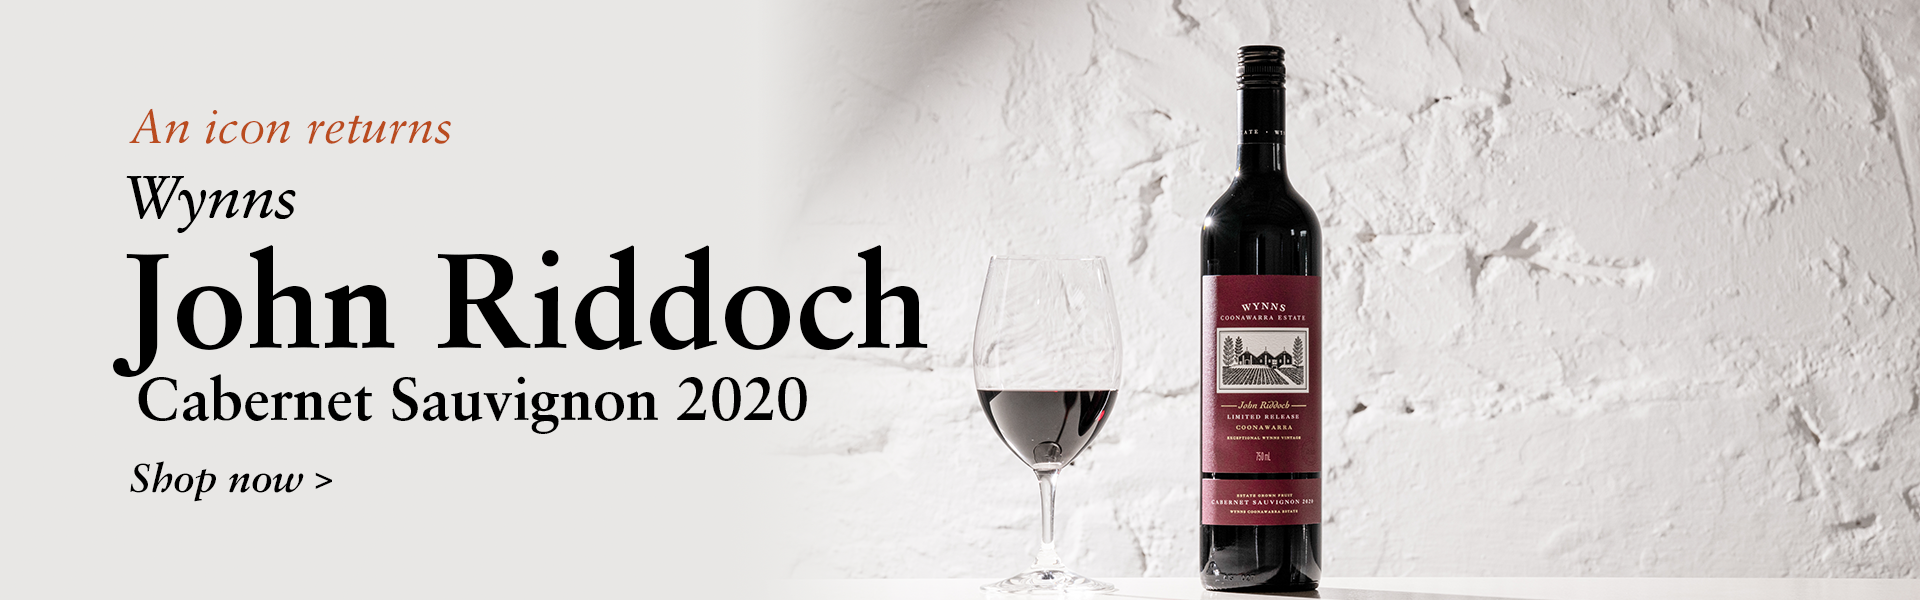 Shop the John Riddoch 2020